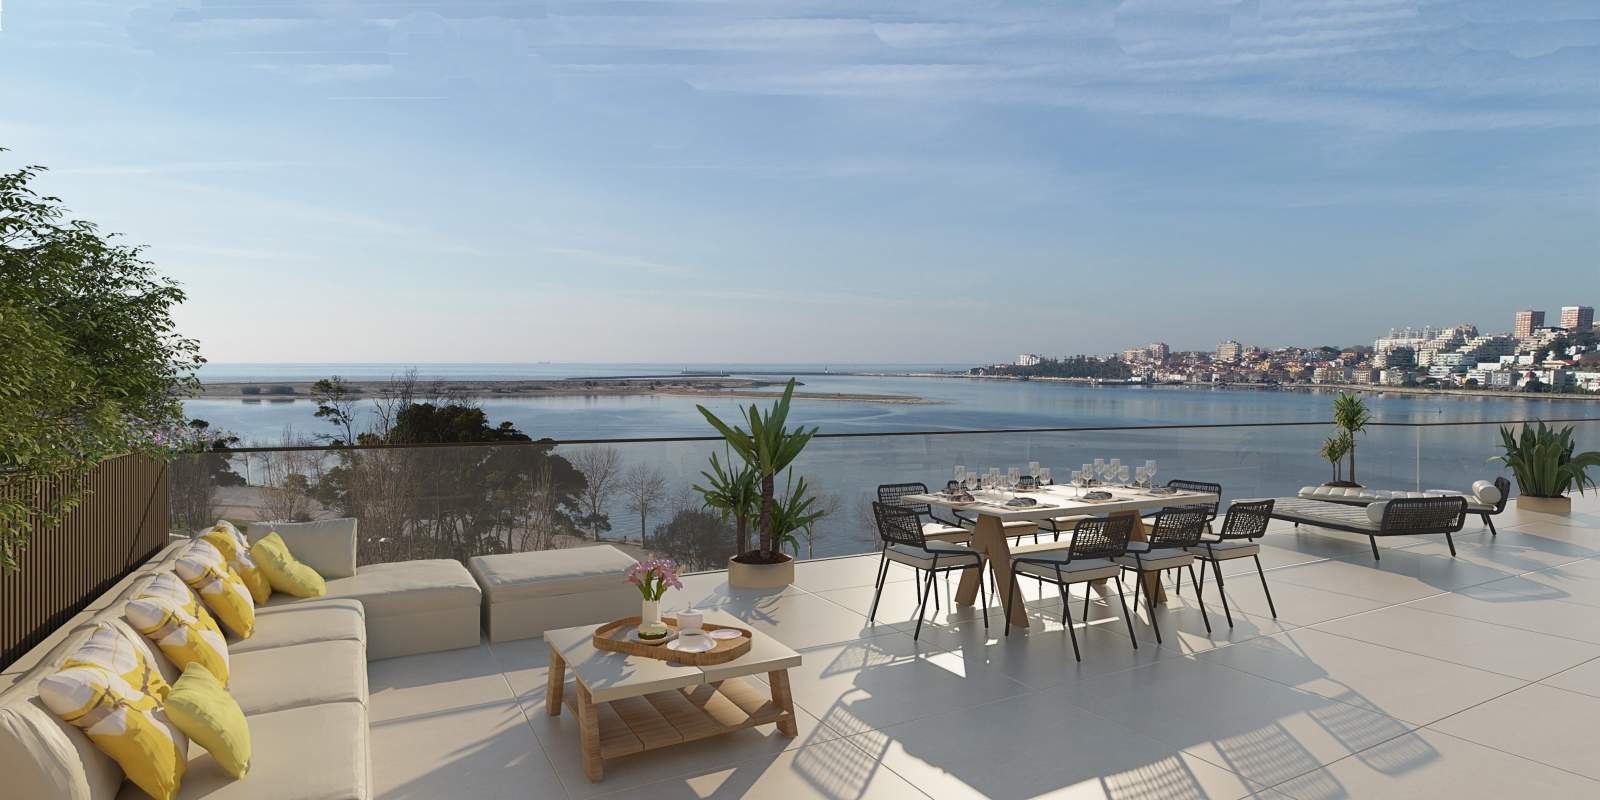 Wohnung zu verkaufen mit Terrasse, in exklusiver Wohnanlage, V. N. Gaia, Porto, Portugal_175784